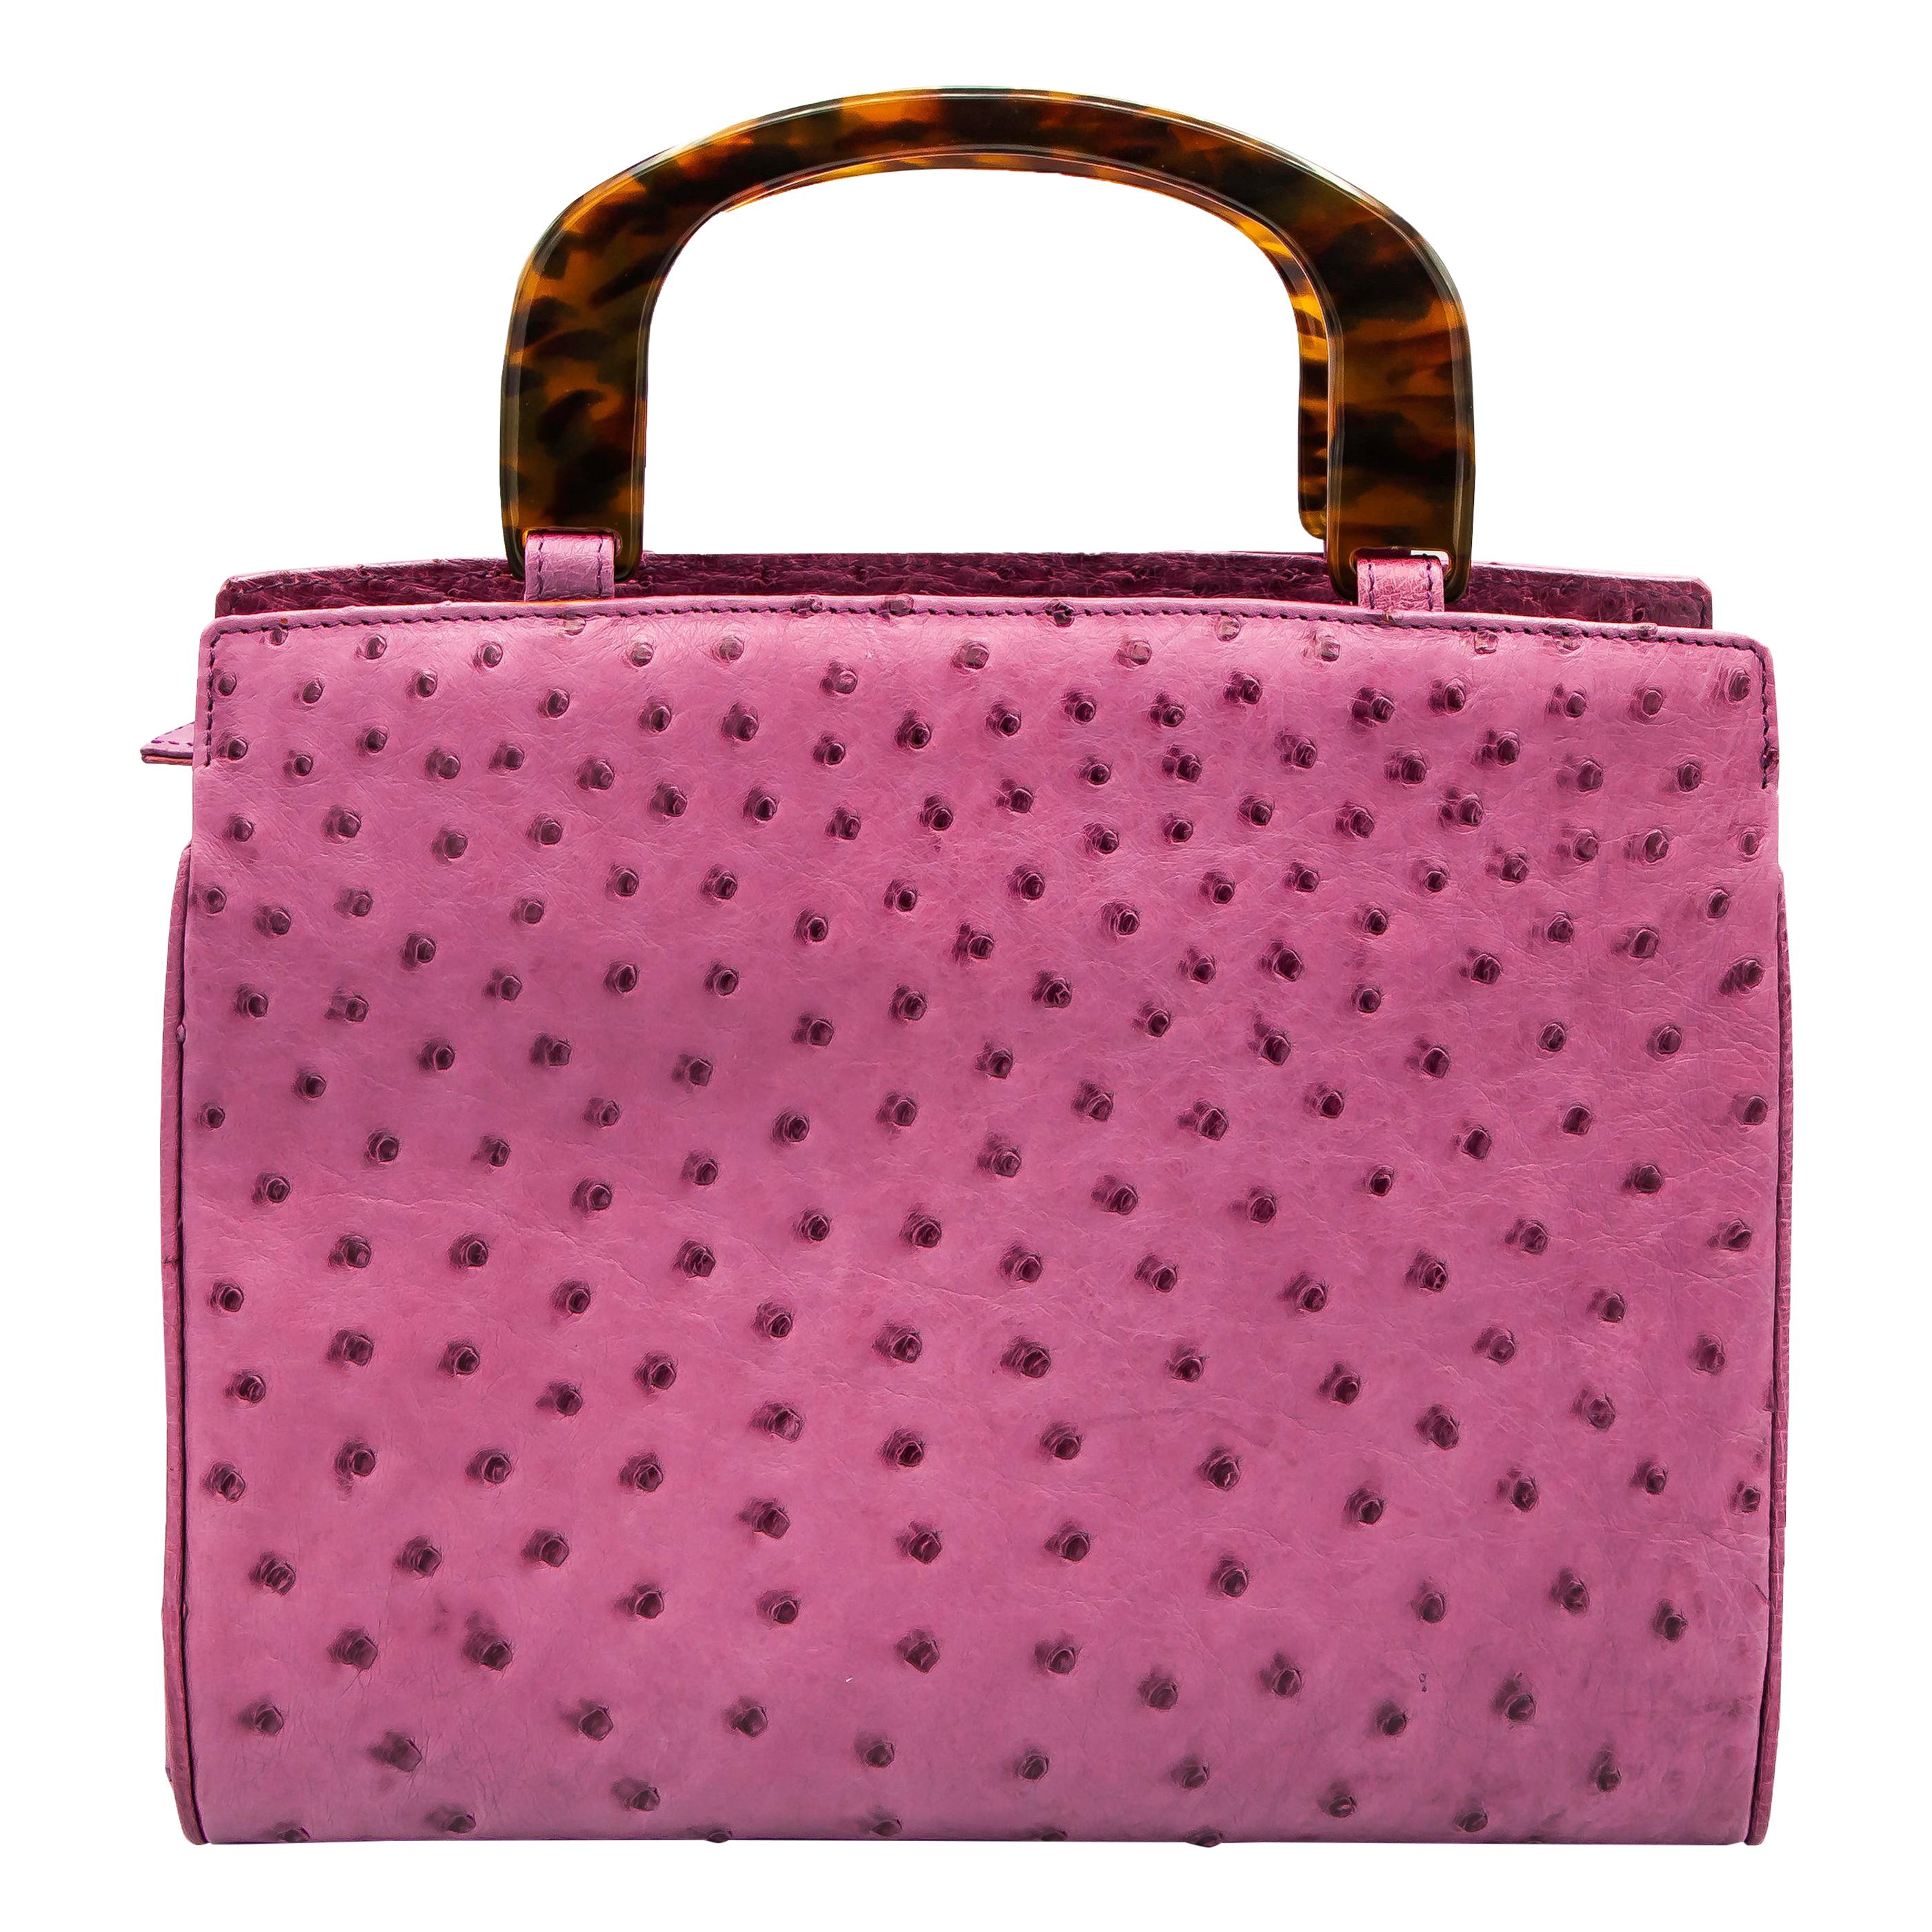 Lana Marks Lavender Pink Ostrich Handbag